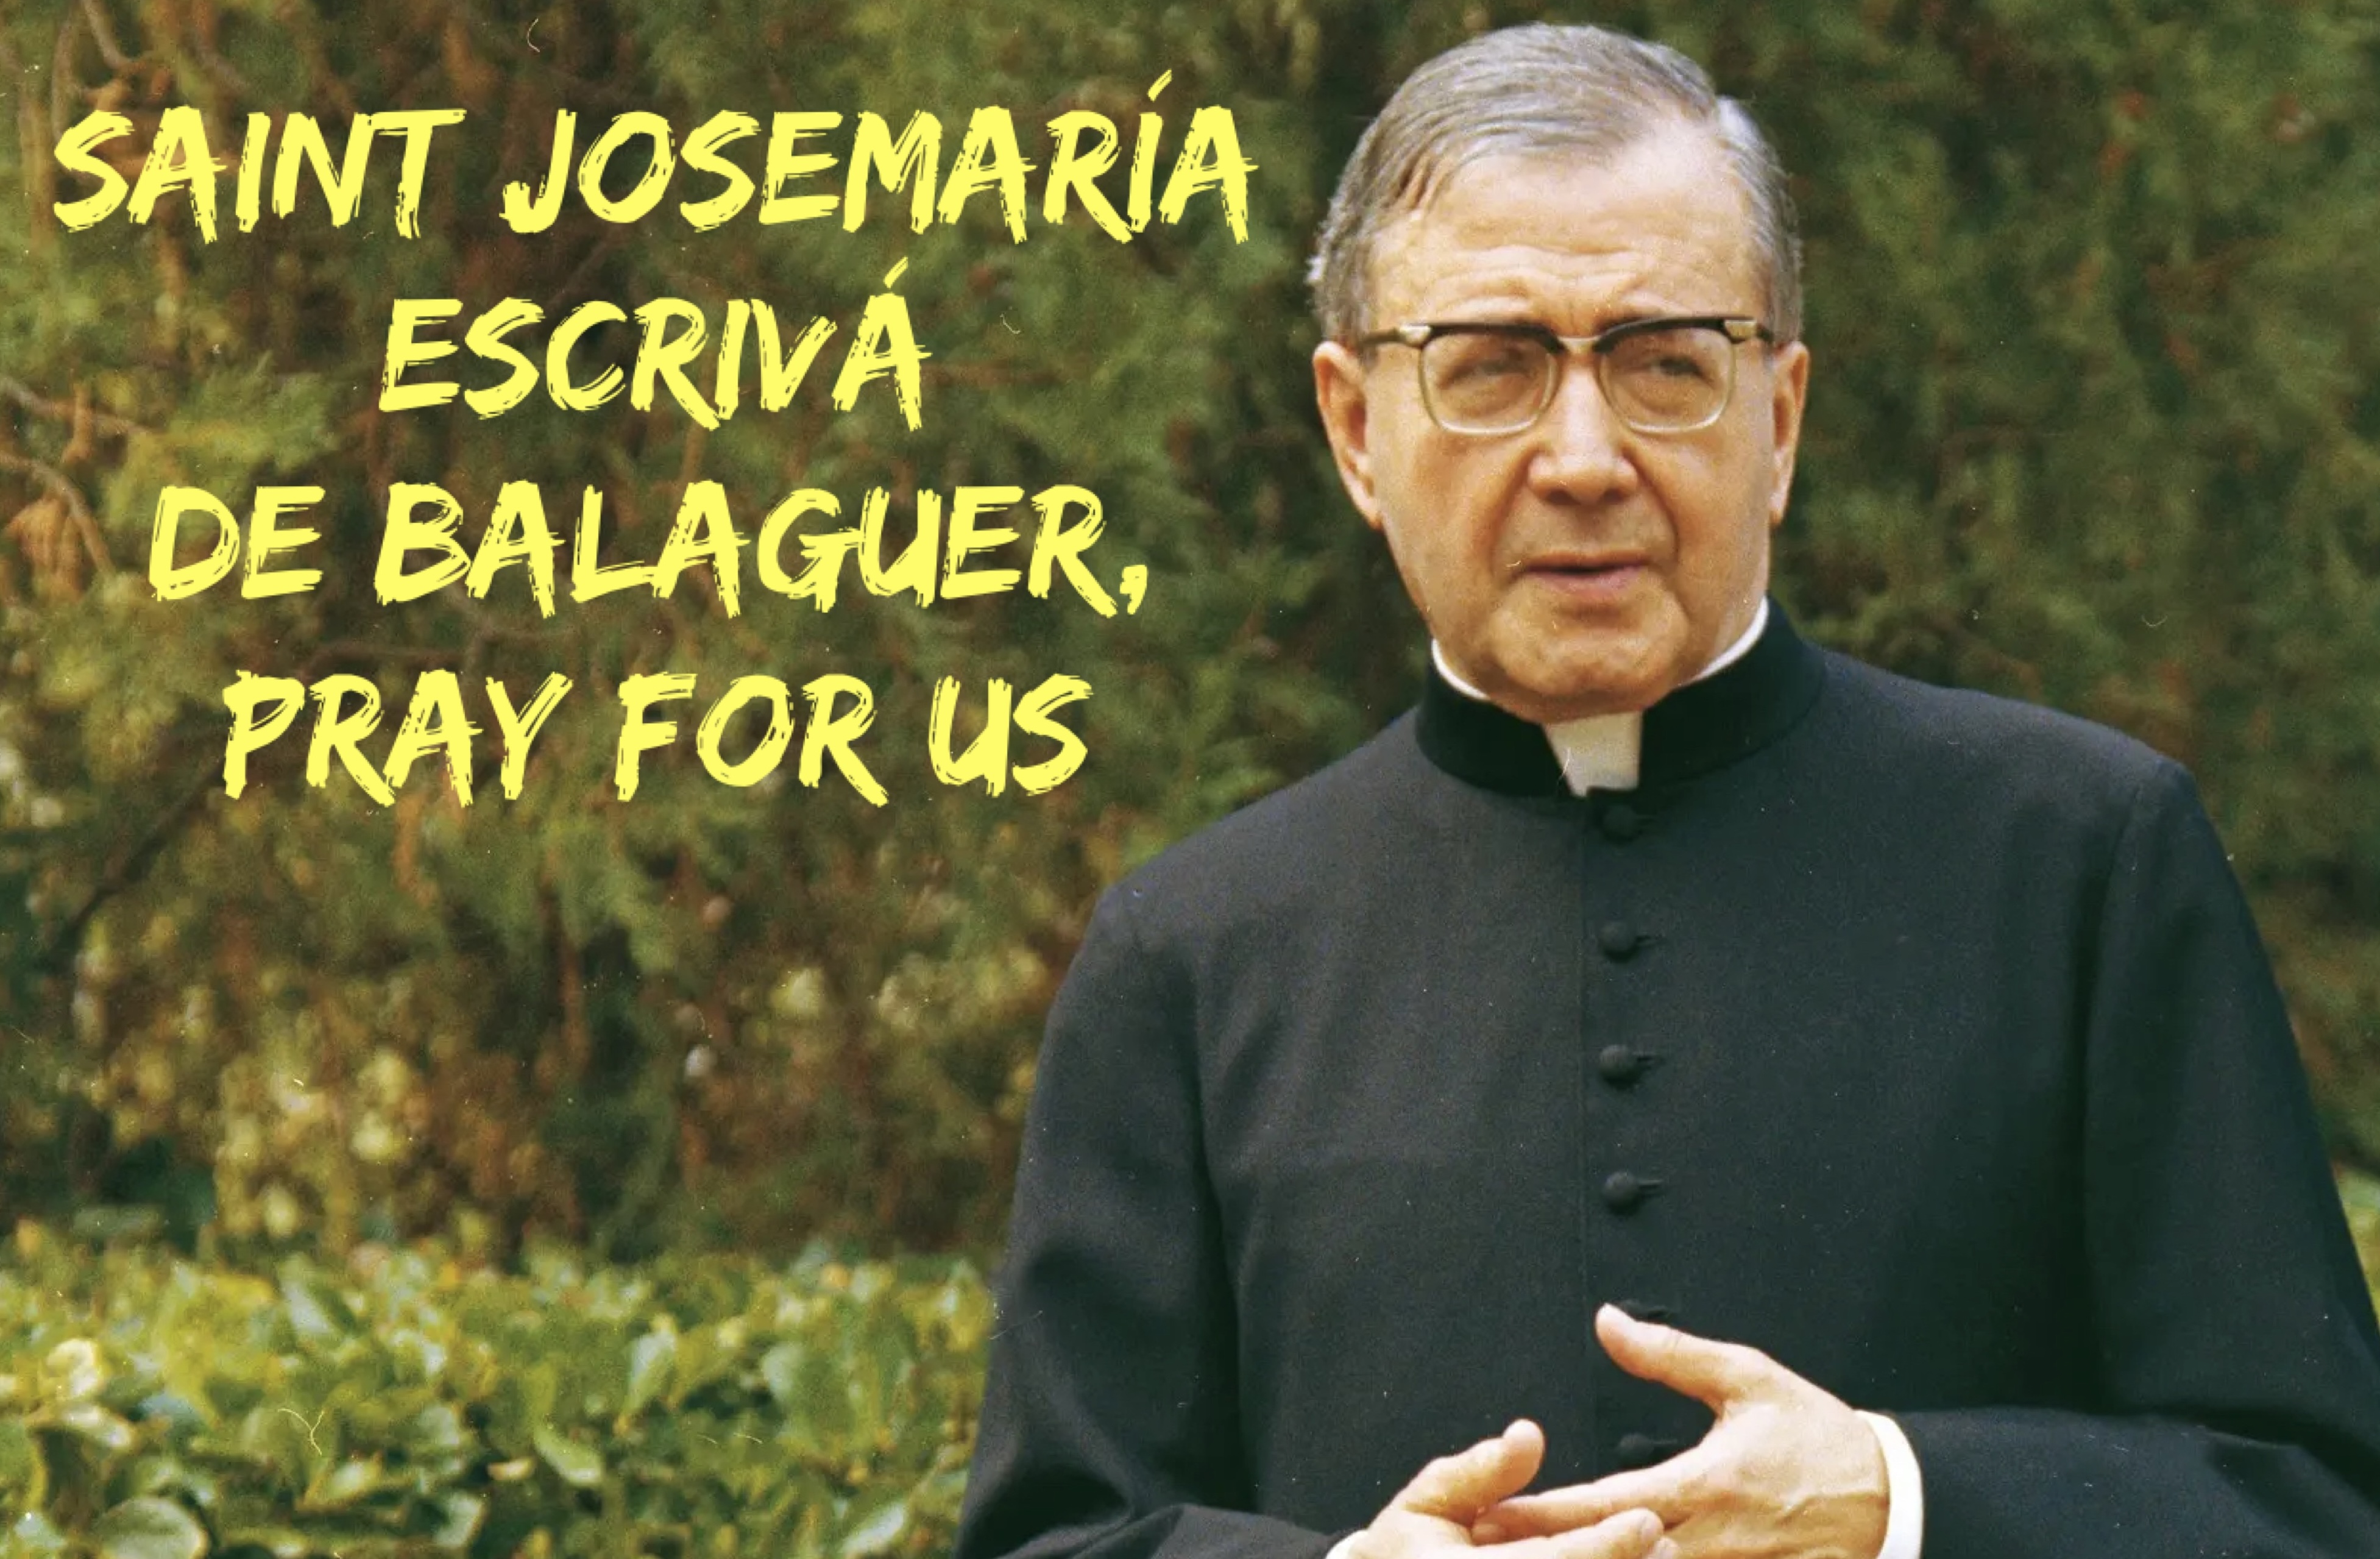 26th June – Saint Josemaría Escrivá de Balaguer